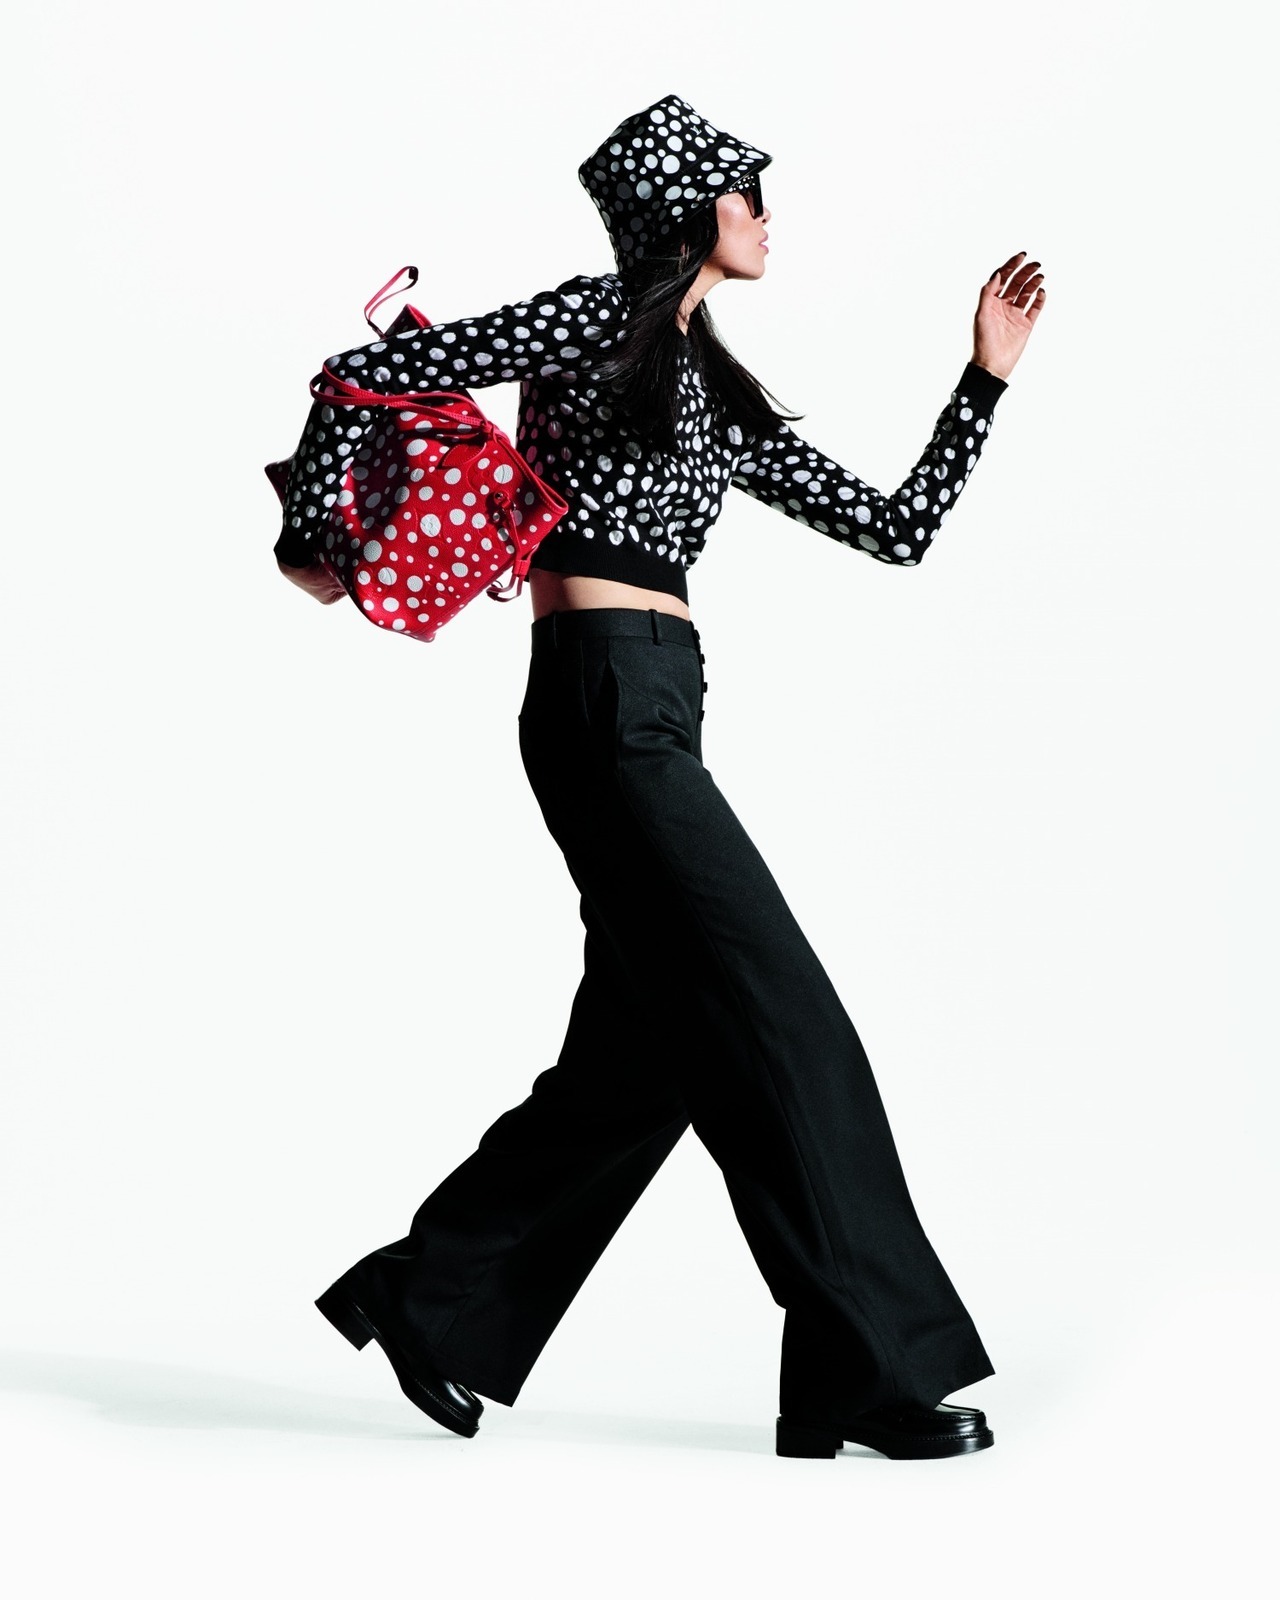 Louis Vuitton Yayoi Kusama Collaboration 2023 - Japan Web Magazine